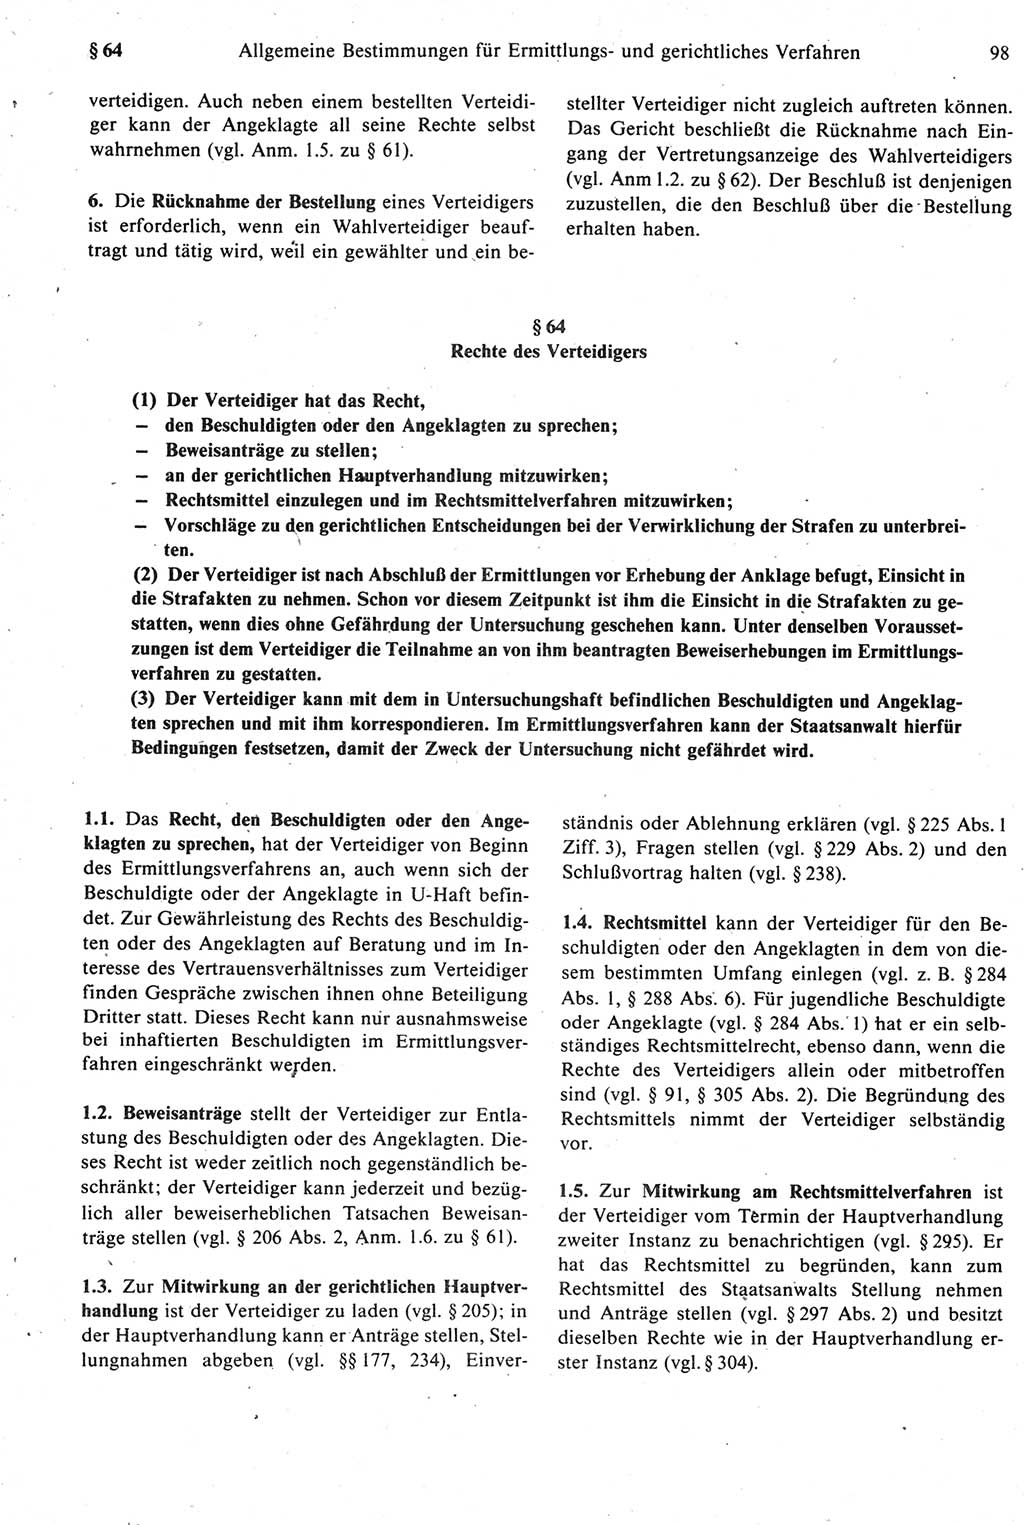 Strafprozeßrecht der DDR [Deutsche Demokratische Republik], Kommentar zur Strafprozeßordnung (StPO) 1987, Seite 98 (Strafprozeßr. DDR Komm. StPO 1987, S. 98)